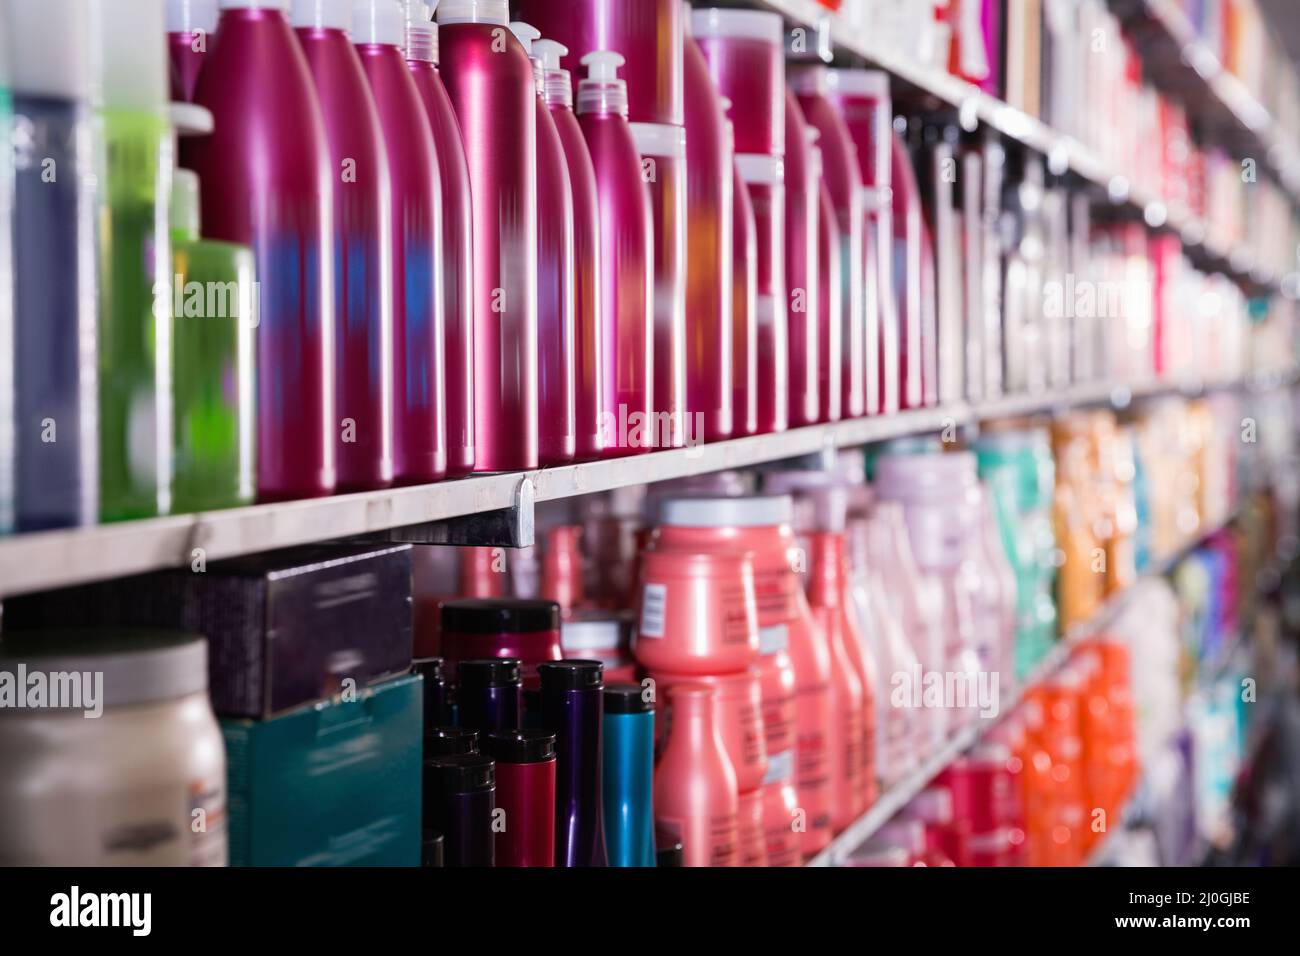 Bild von Regalen mit Conditionern und Mousse für Haare im Geschäft. Stockfoto